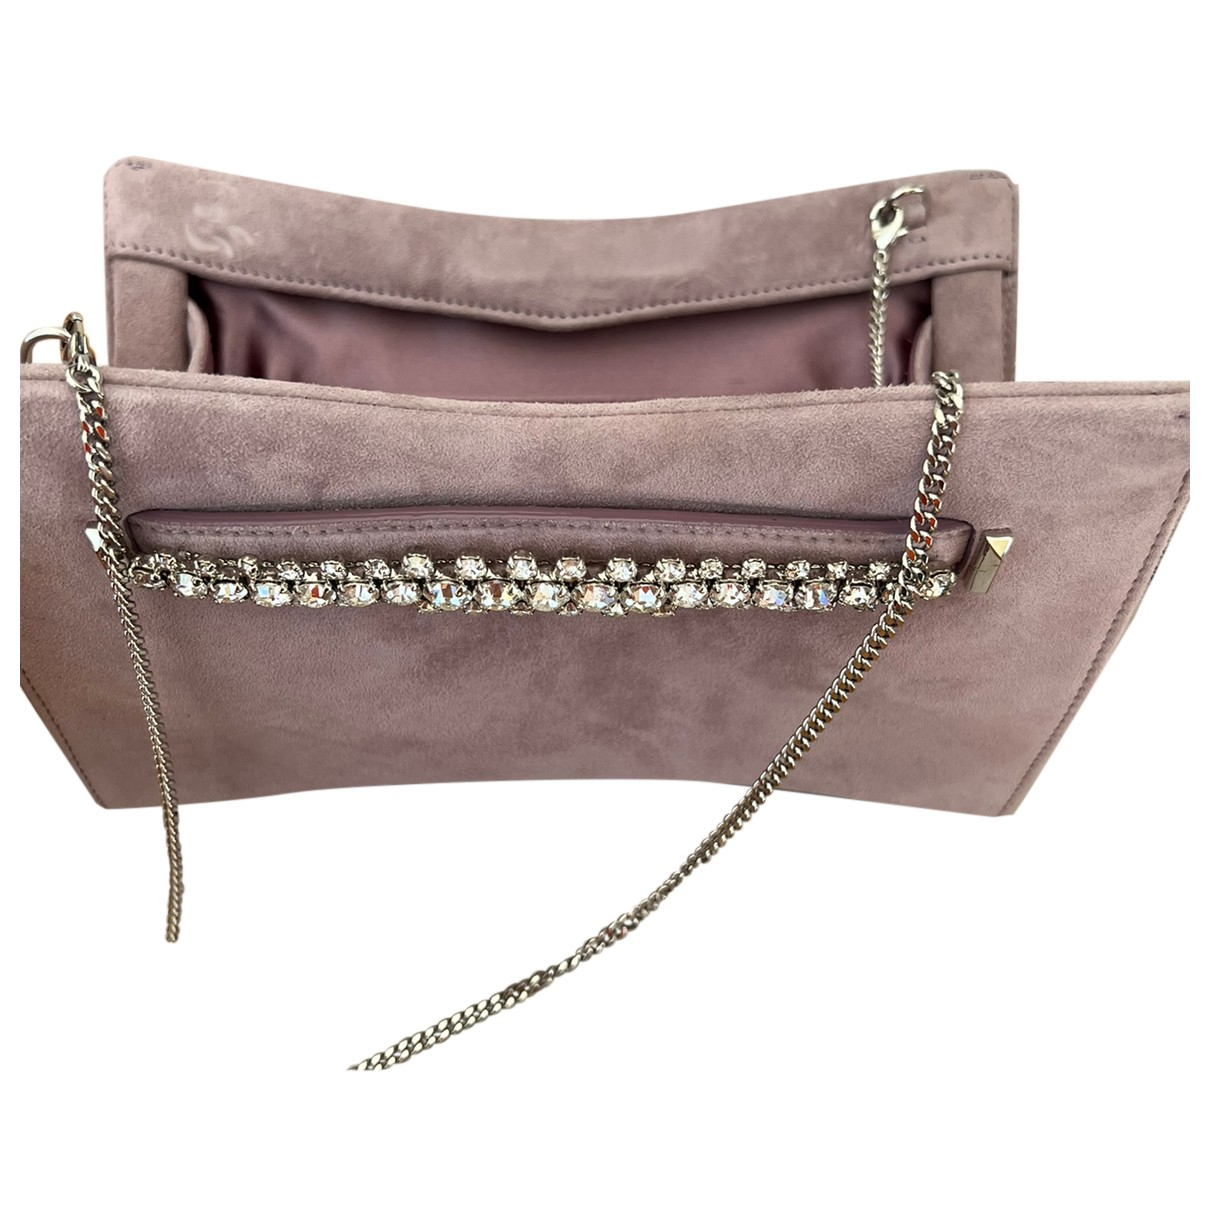 Velvet handbag Luxury goods Save money